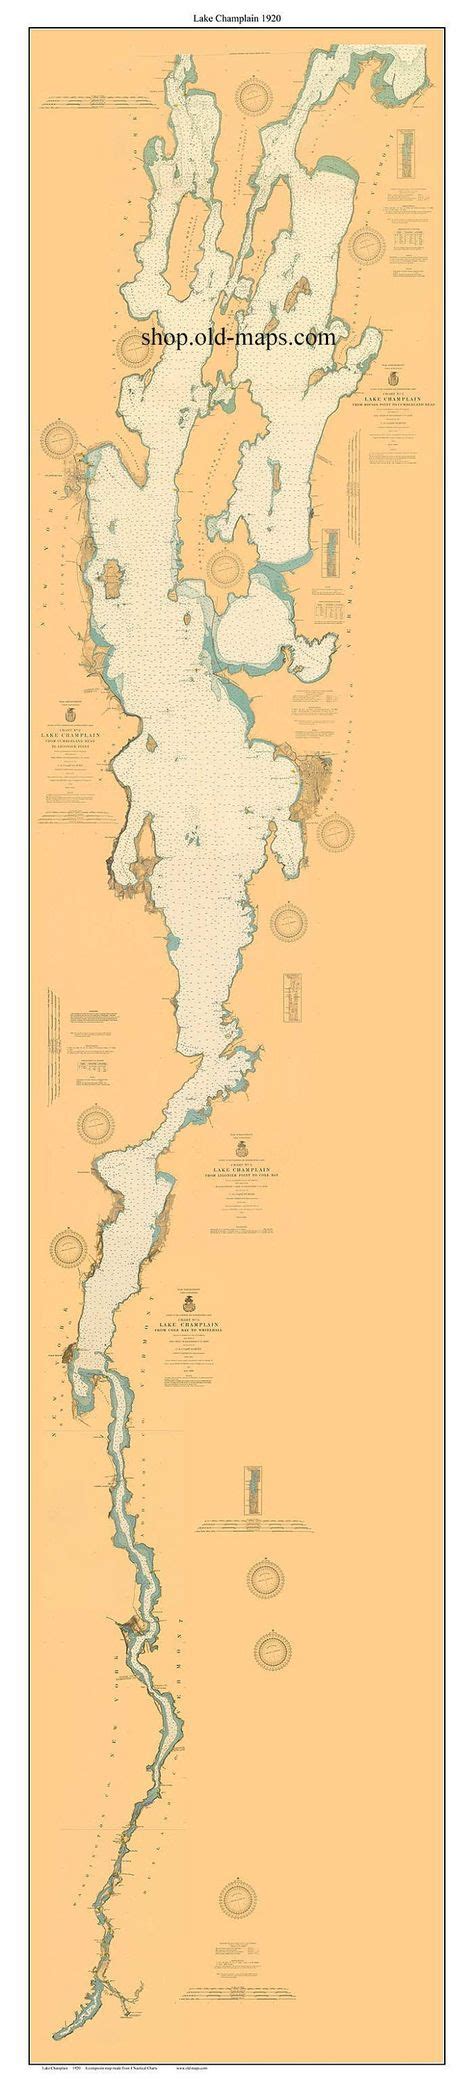 Lake Champlain Navigation Map SexiezPicz Web Porn